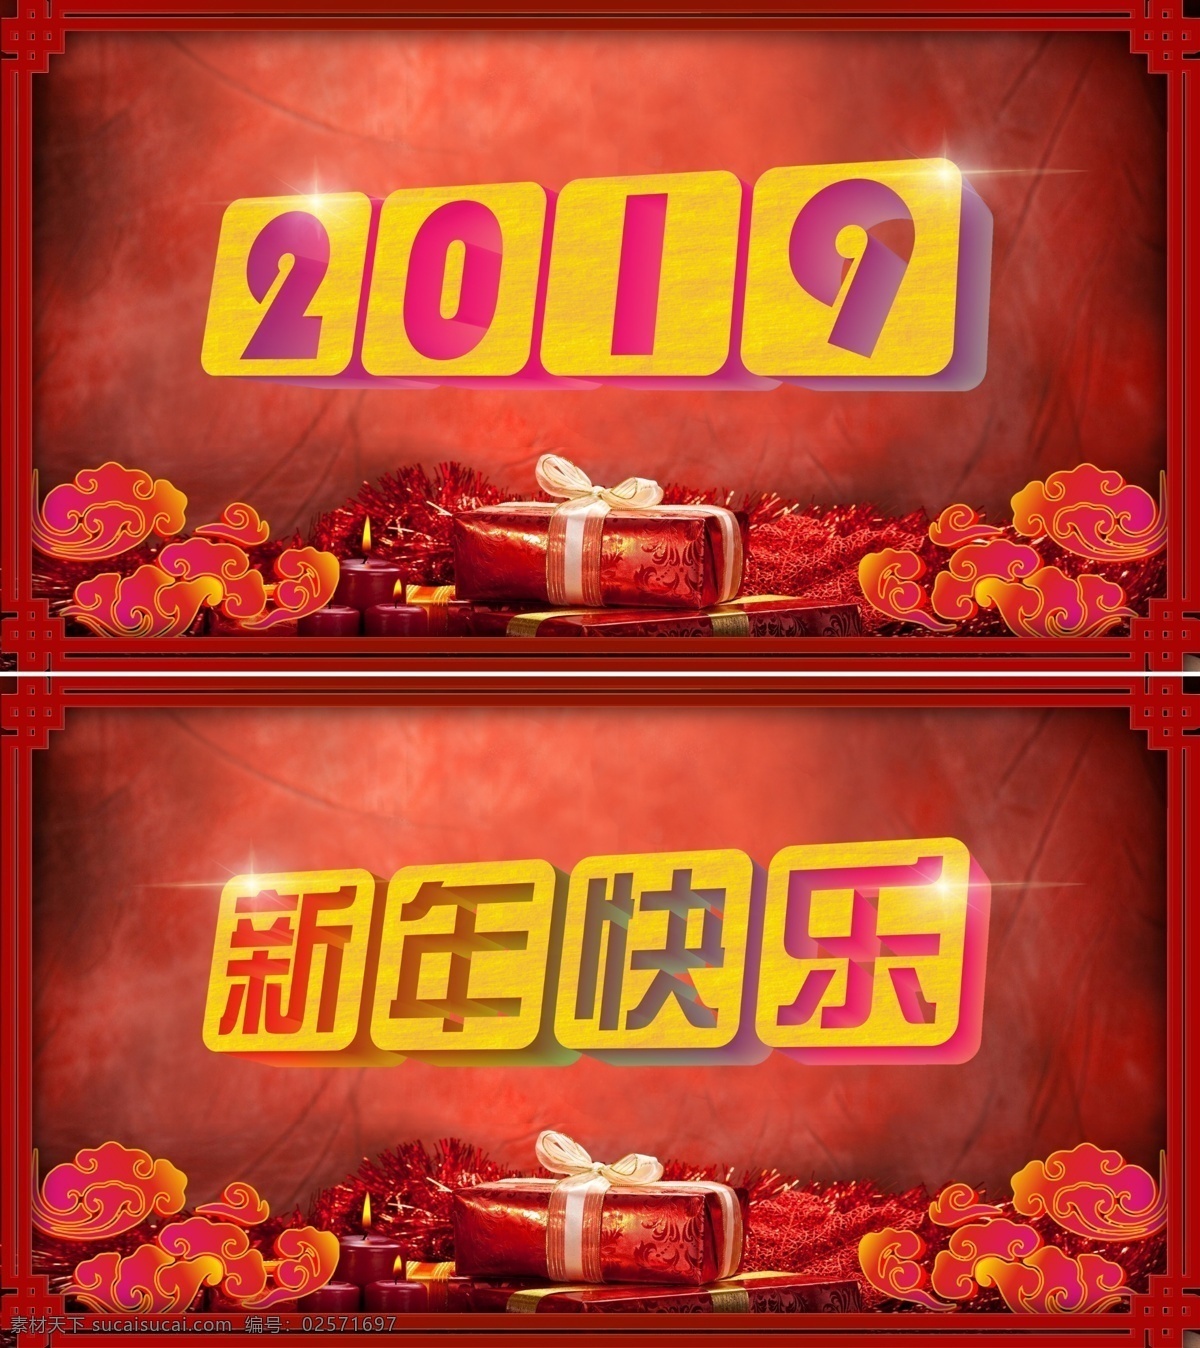 2019 新年 快乐 新年快乐 年 装扮 装饰 红色背景